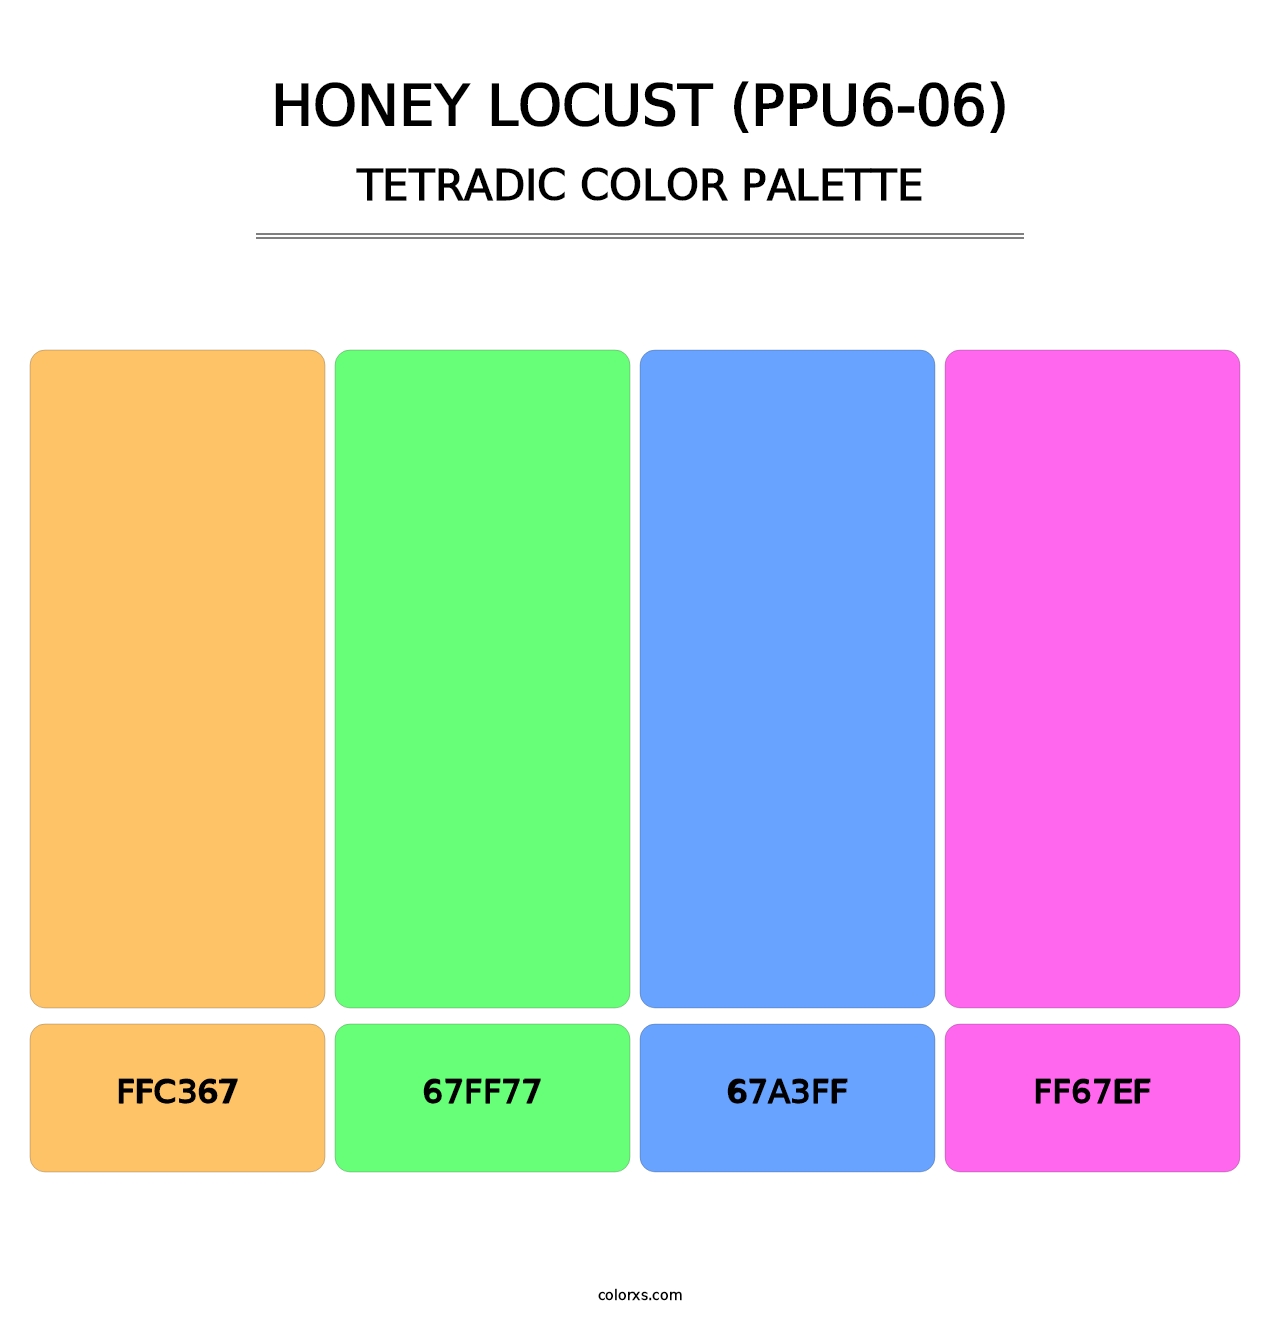 Honey Locust (PPU6-06) - Tetradic Color Palette